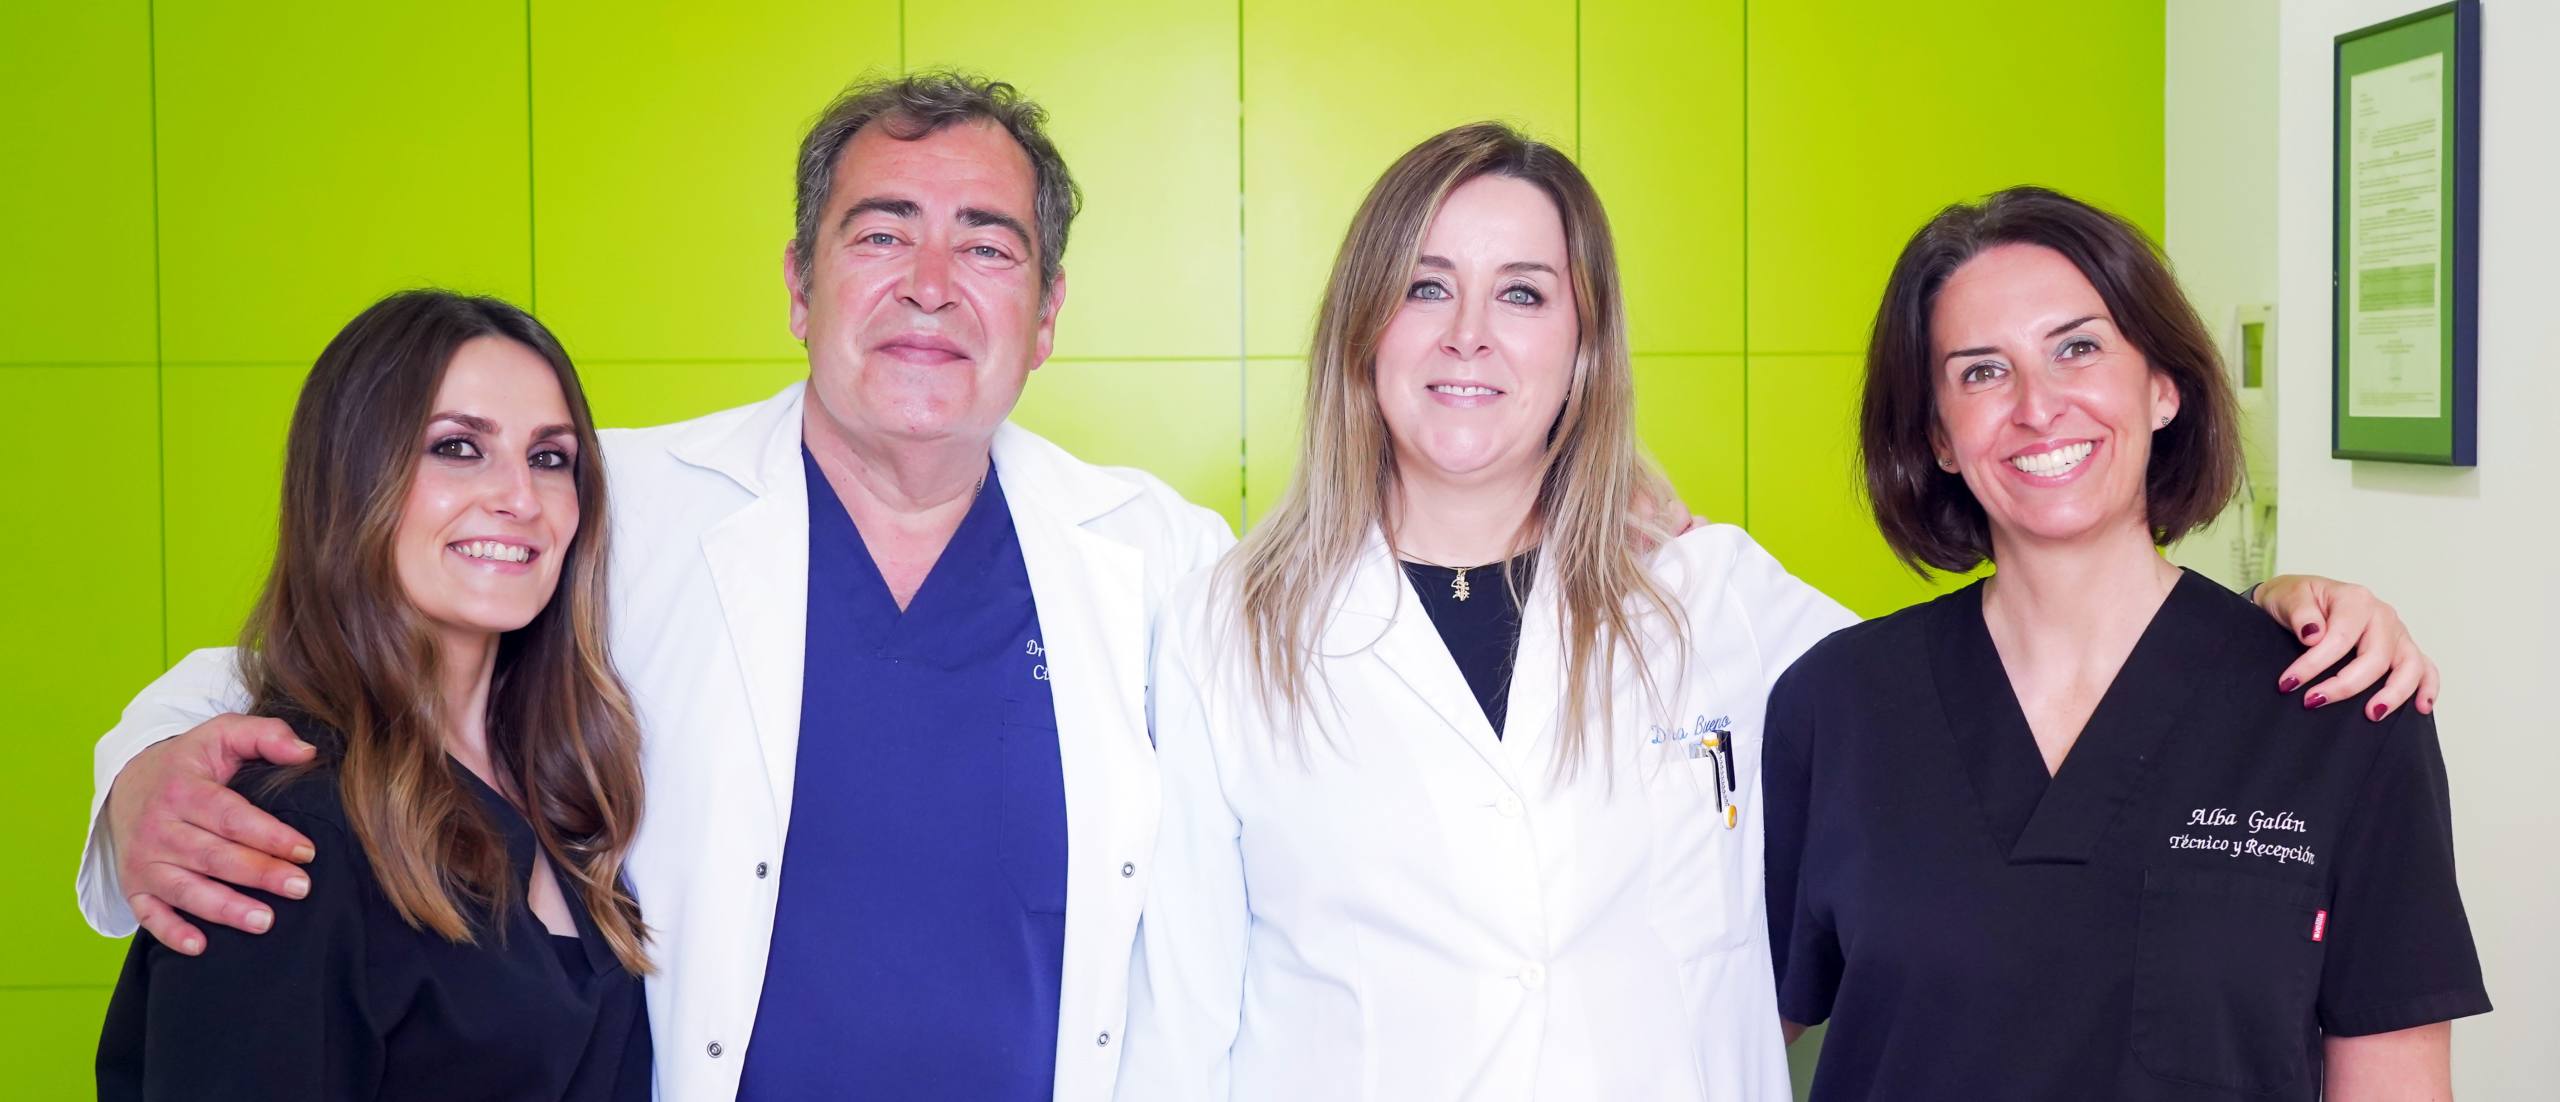 Dr. Sergio Alonso | Clínica Medicina y Cirugía Estética | Cáceres